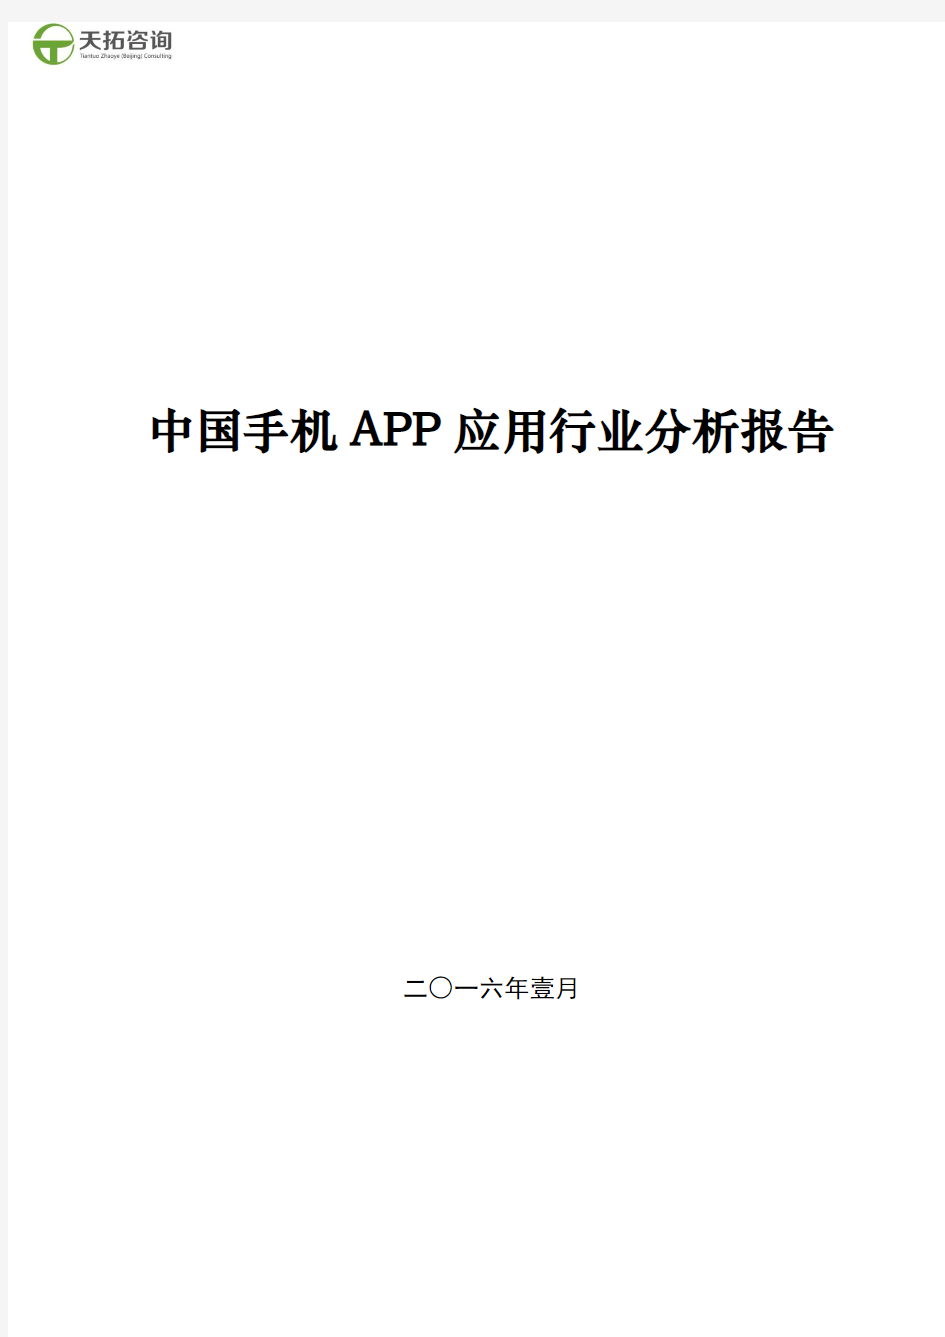 中国手机APP应用行业分析报告